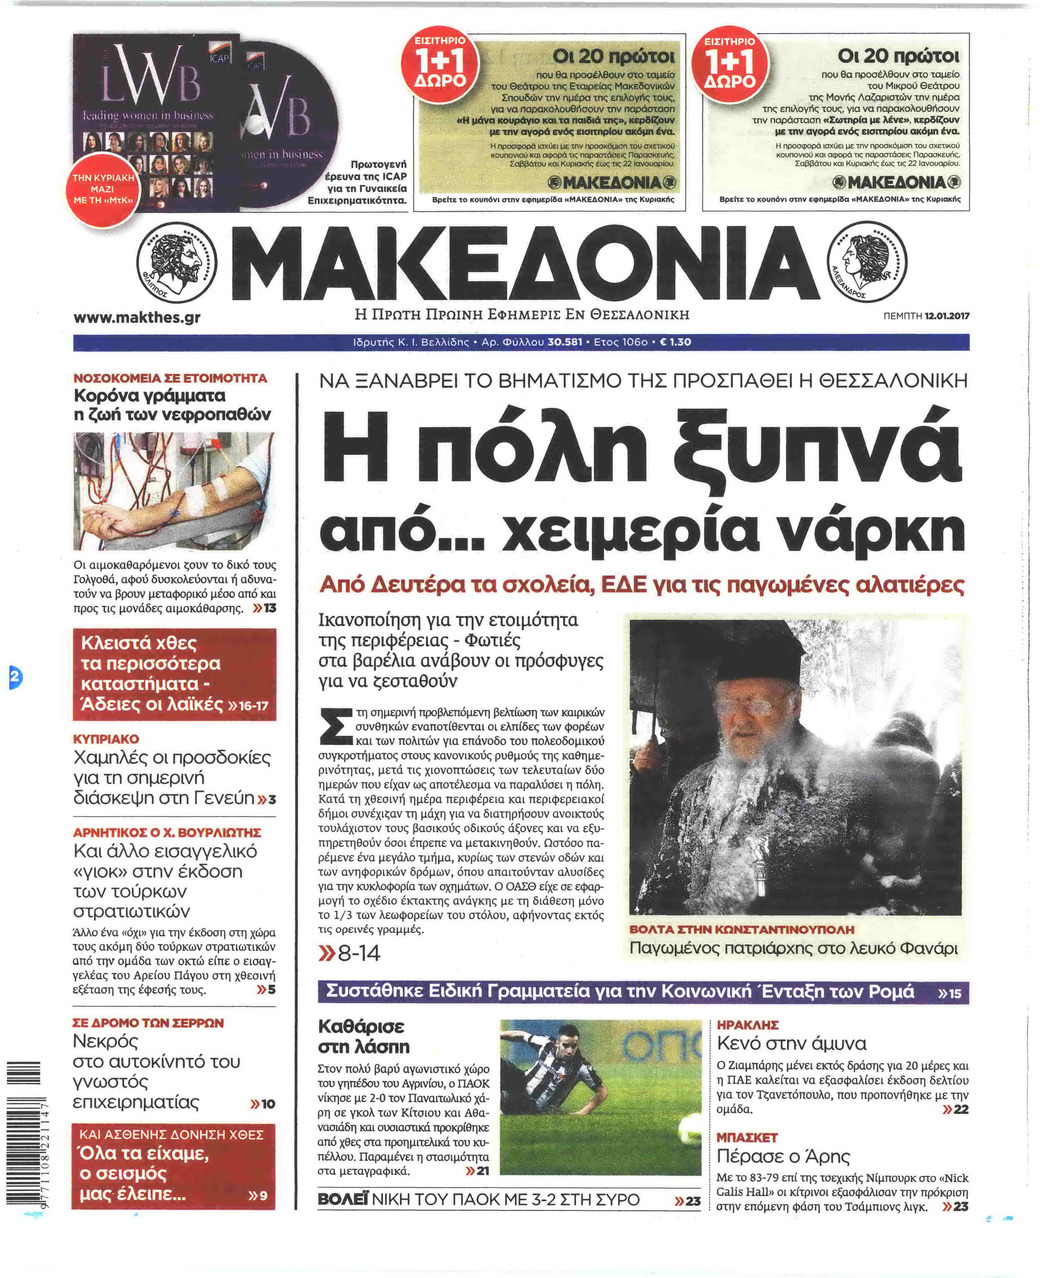 Πρωτοσέλιδο εφημερίδας Μακεδονία